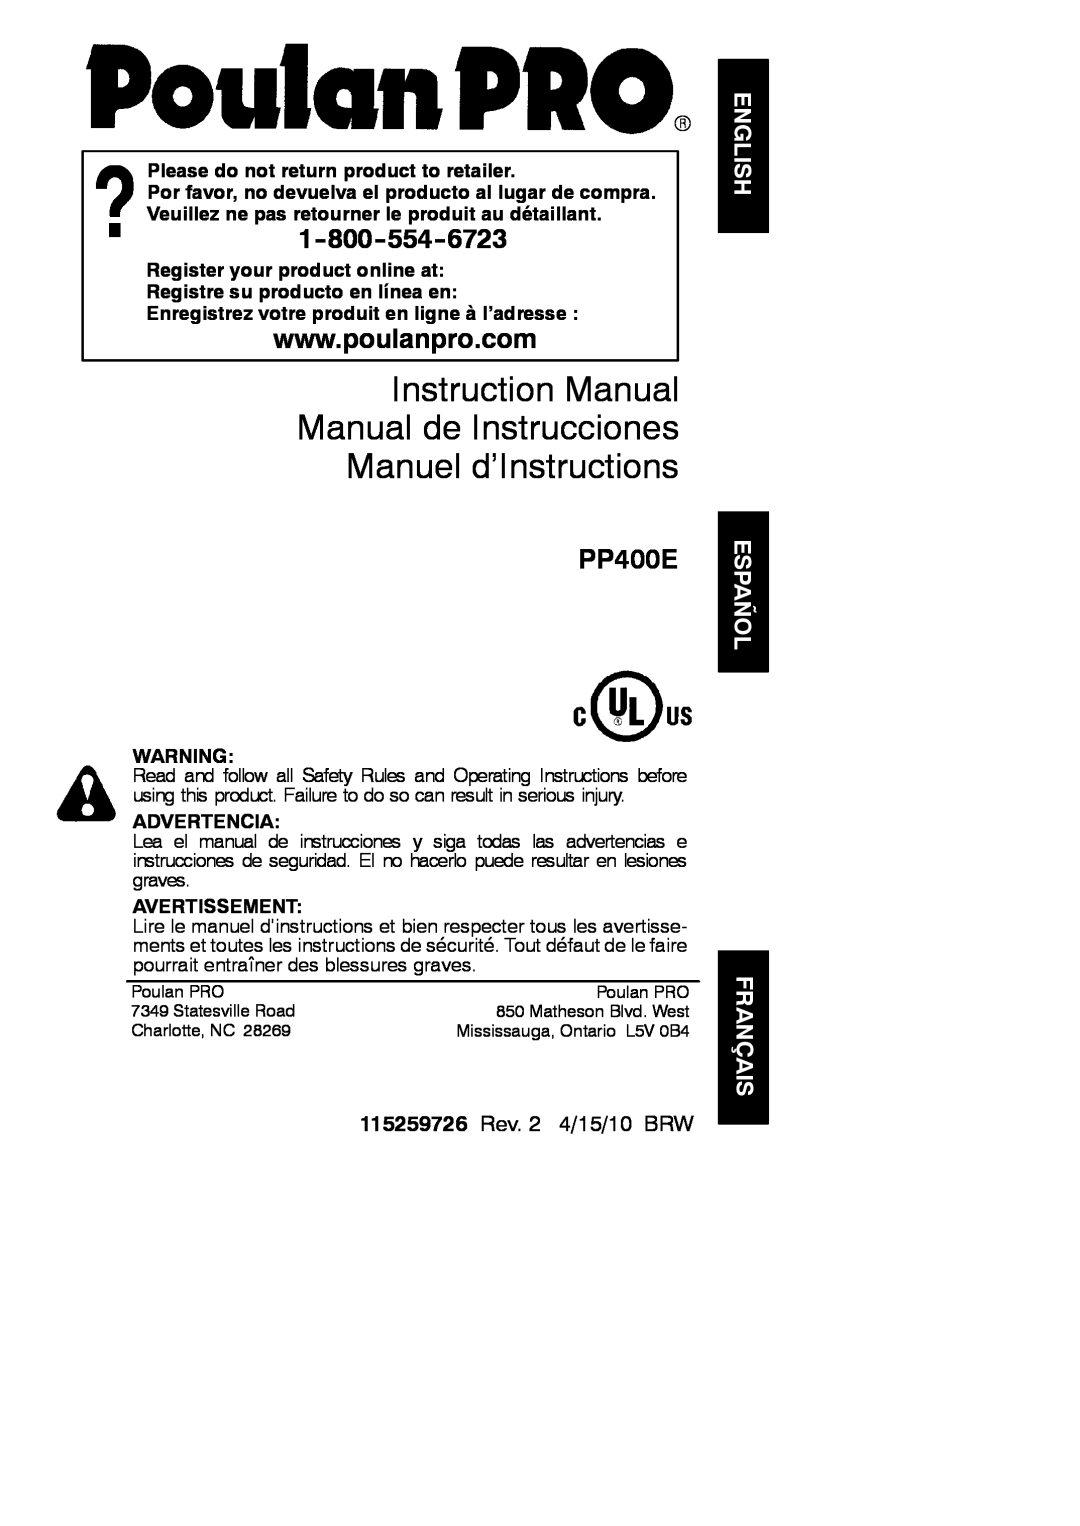 Poulan 952801955 instruction manual English Español, Français, PP400E, 115259726 Rev. 2 4/15/10 BRW, Advertencia 